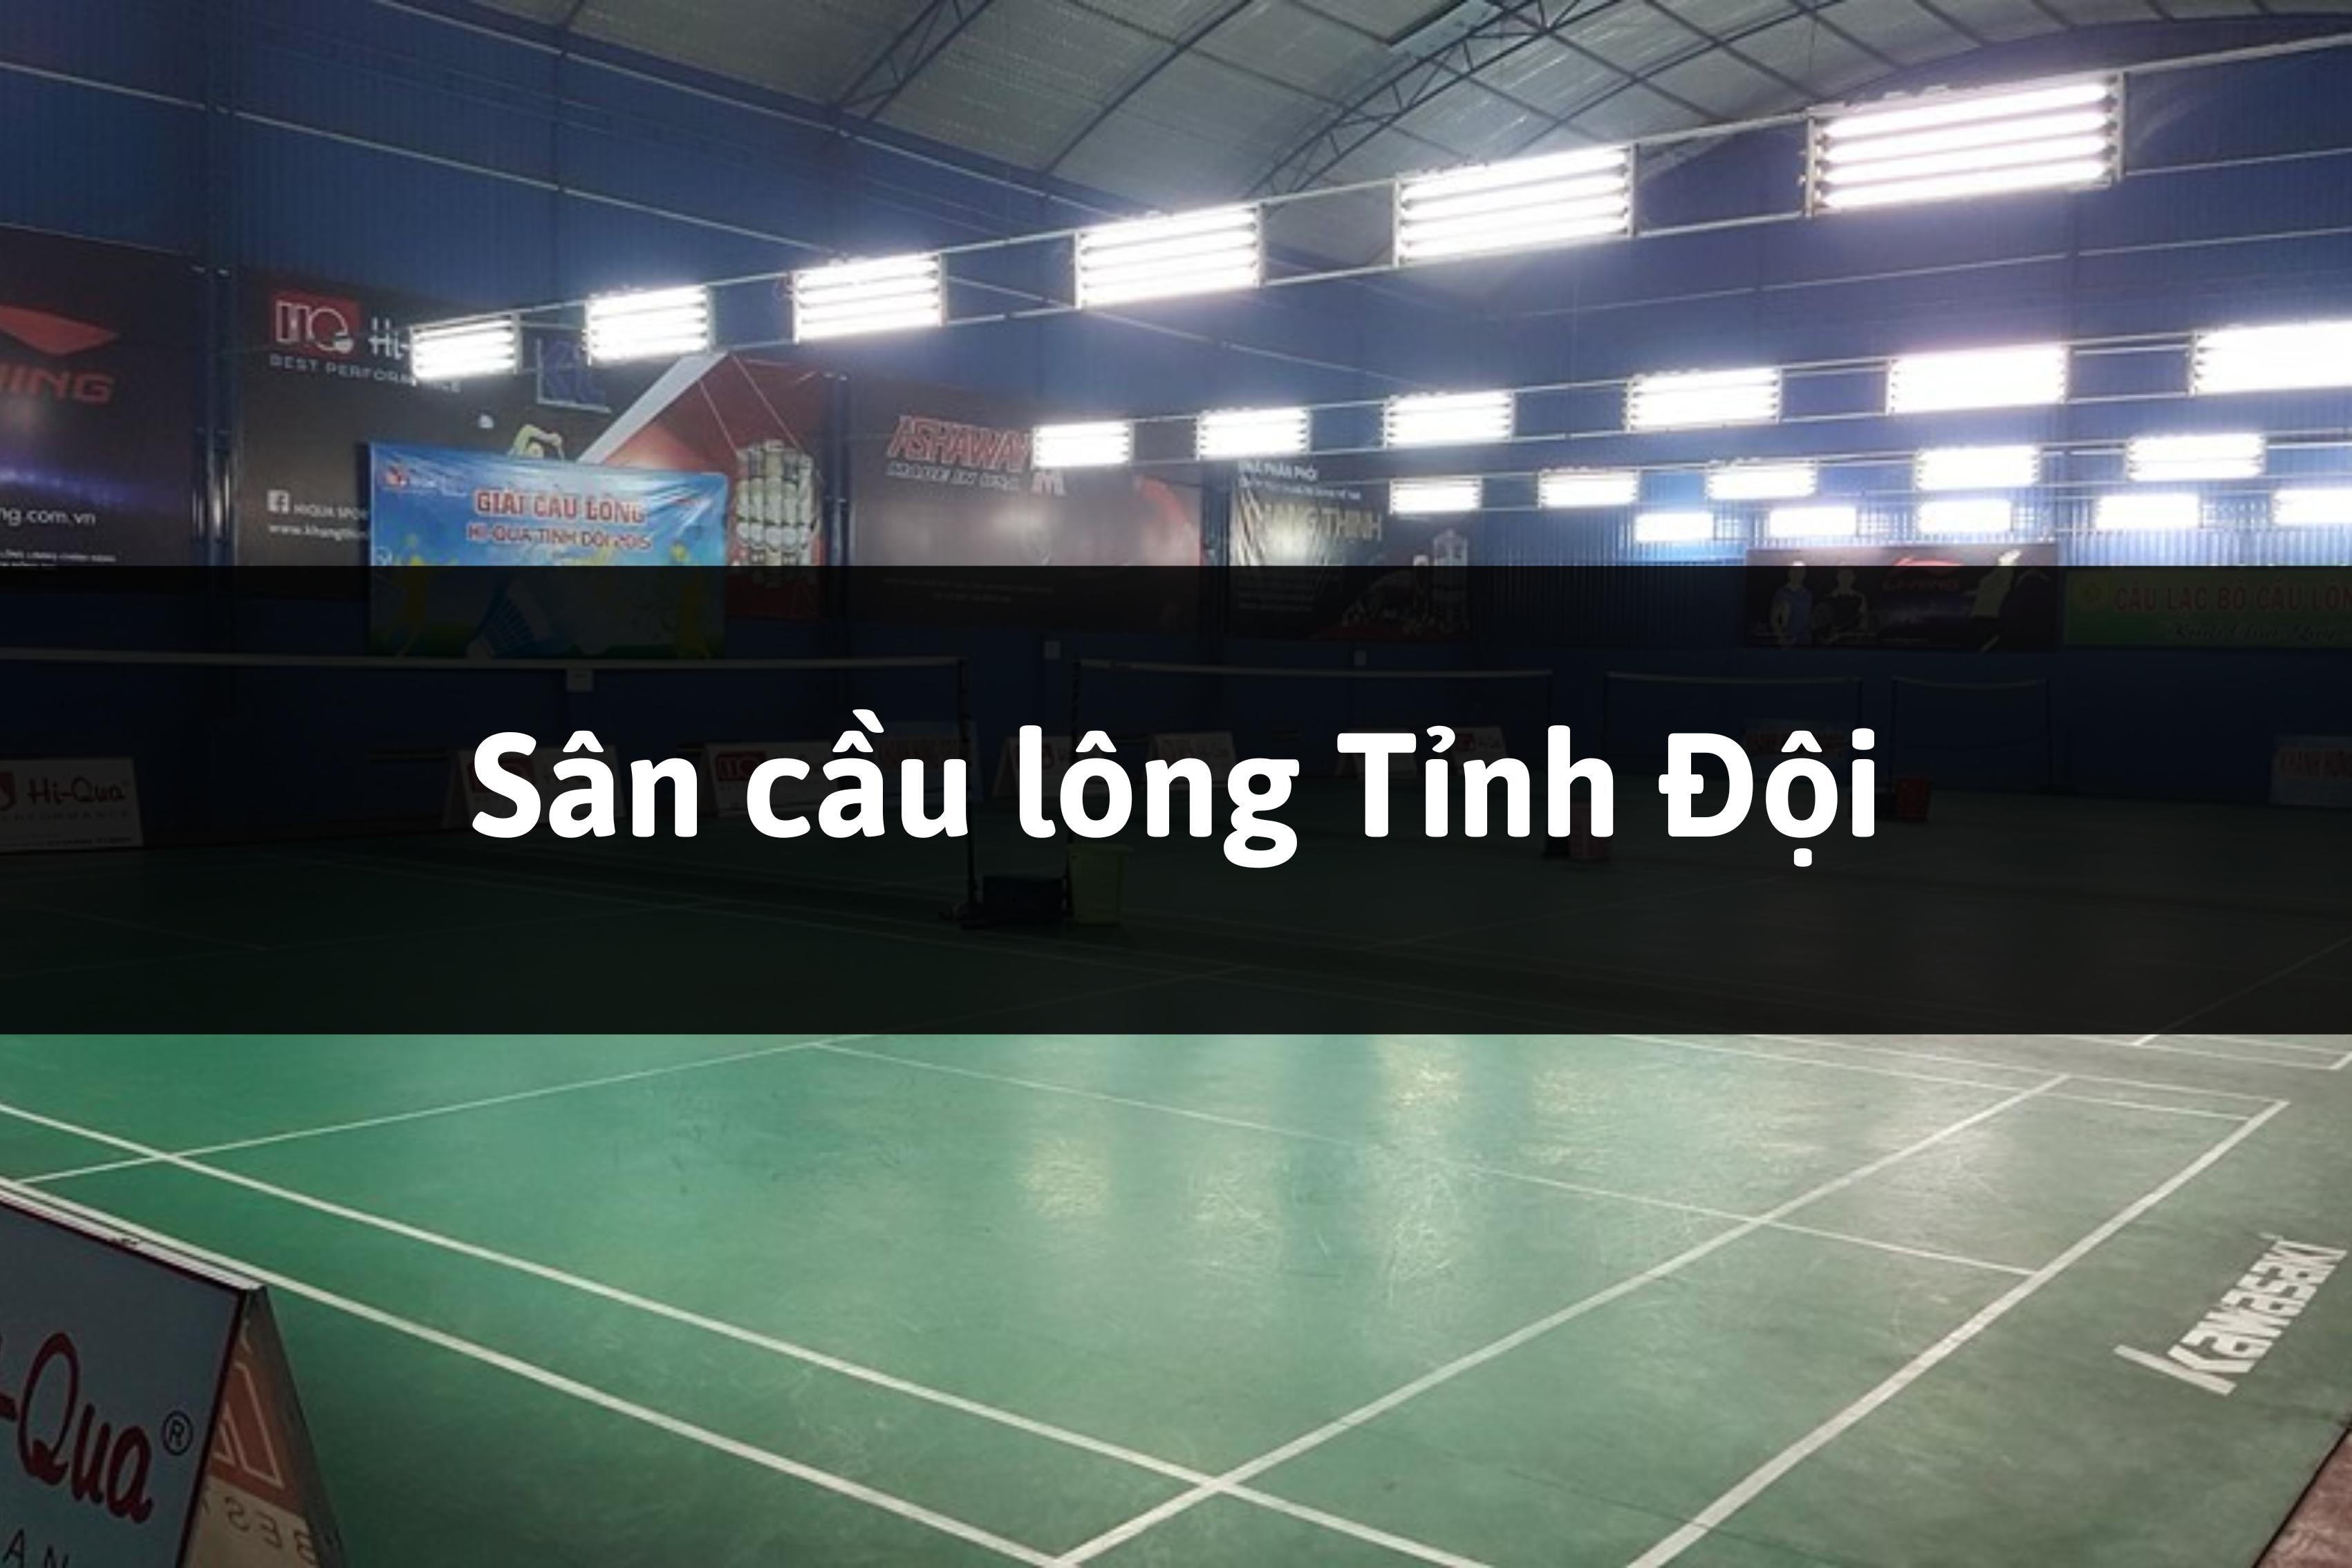 Sân cầu lông Tỉnh Đội, Biên Hòa, Đồng Nai